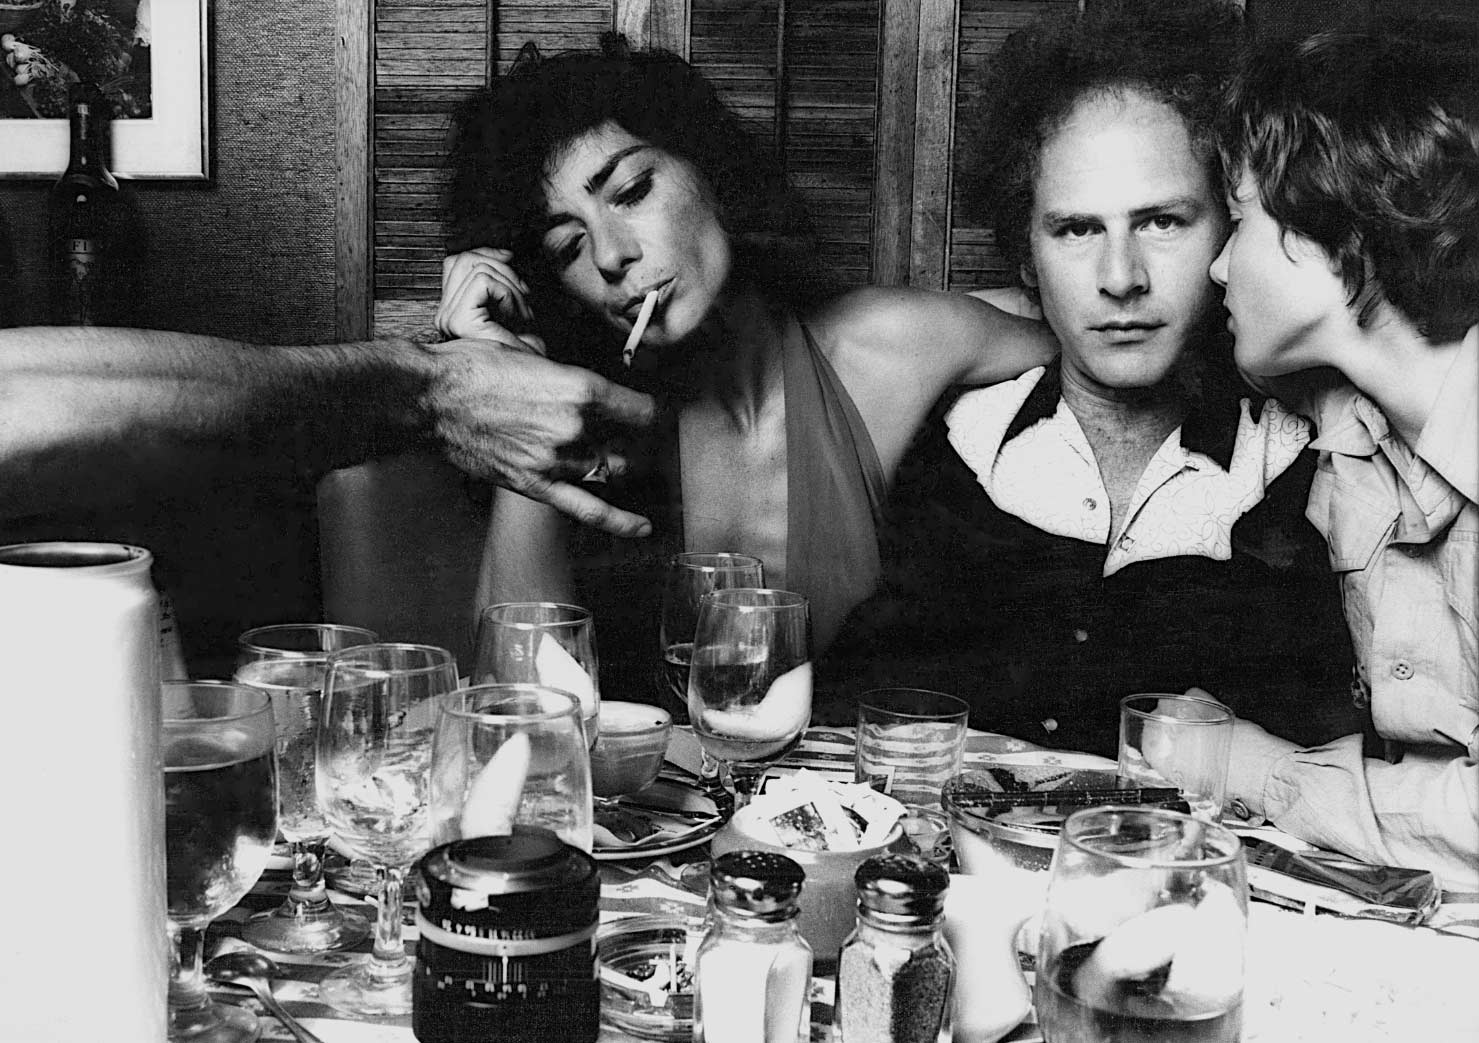 Art Garfunkel, Los Angeles 1975 “Breakaway”